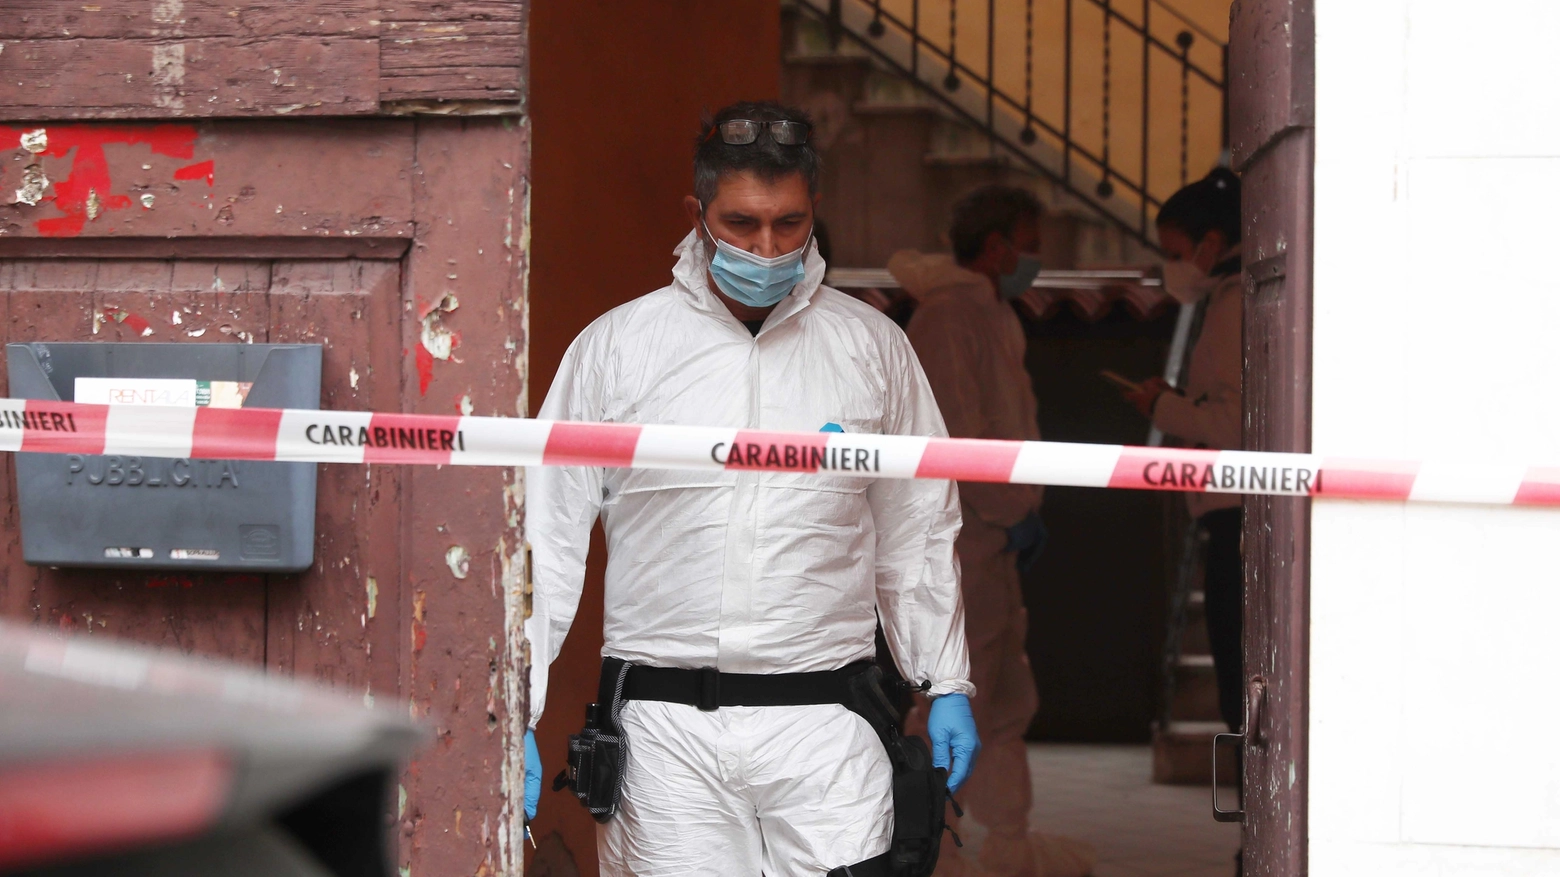 Morta in casa in via Cartoleria, a Bologna: il cadavere di Francesca Migliano trovato dopo settimane. Indagini dei carabinieri (archivio)